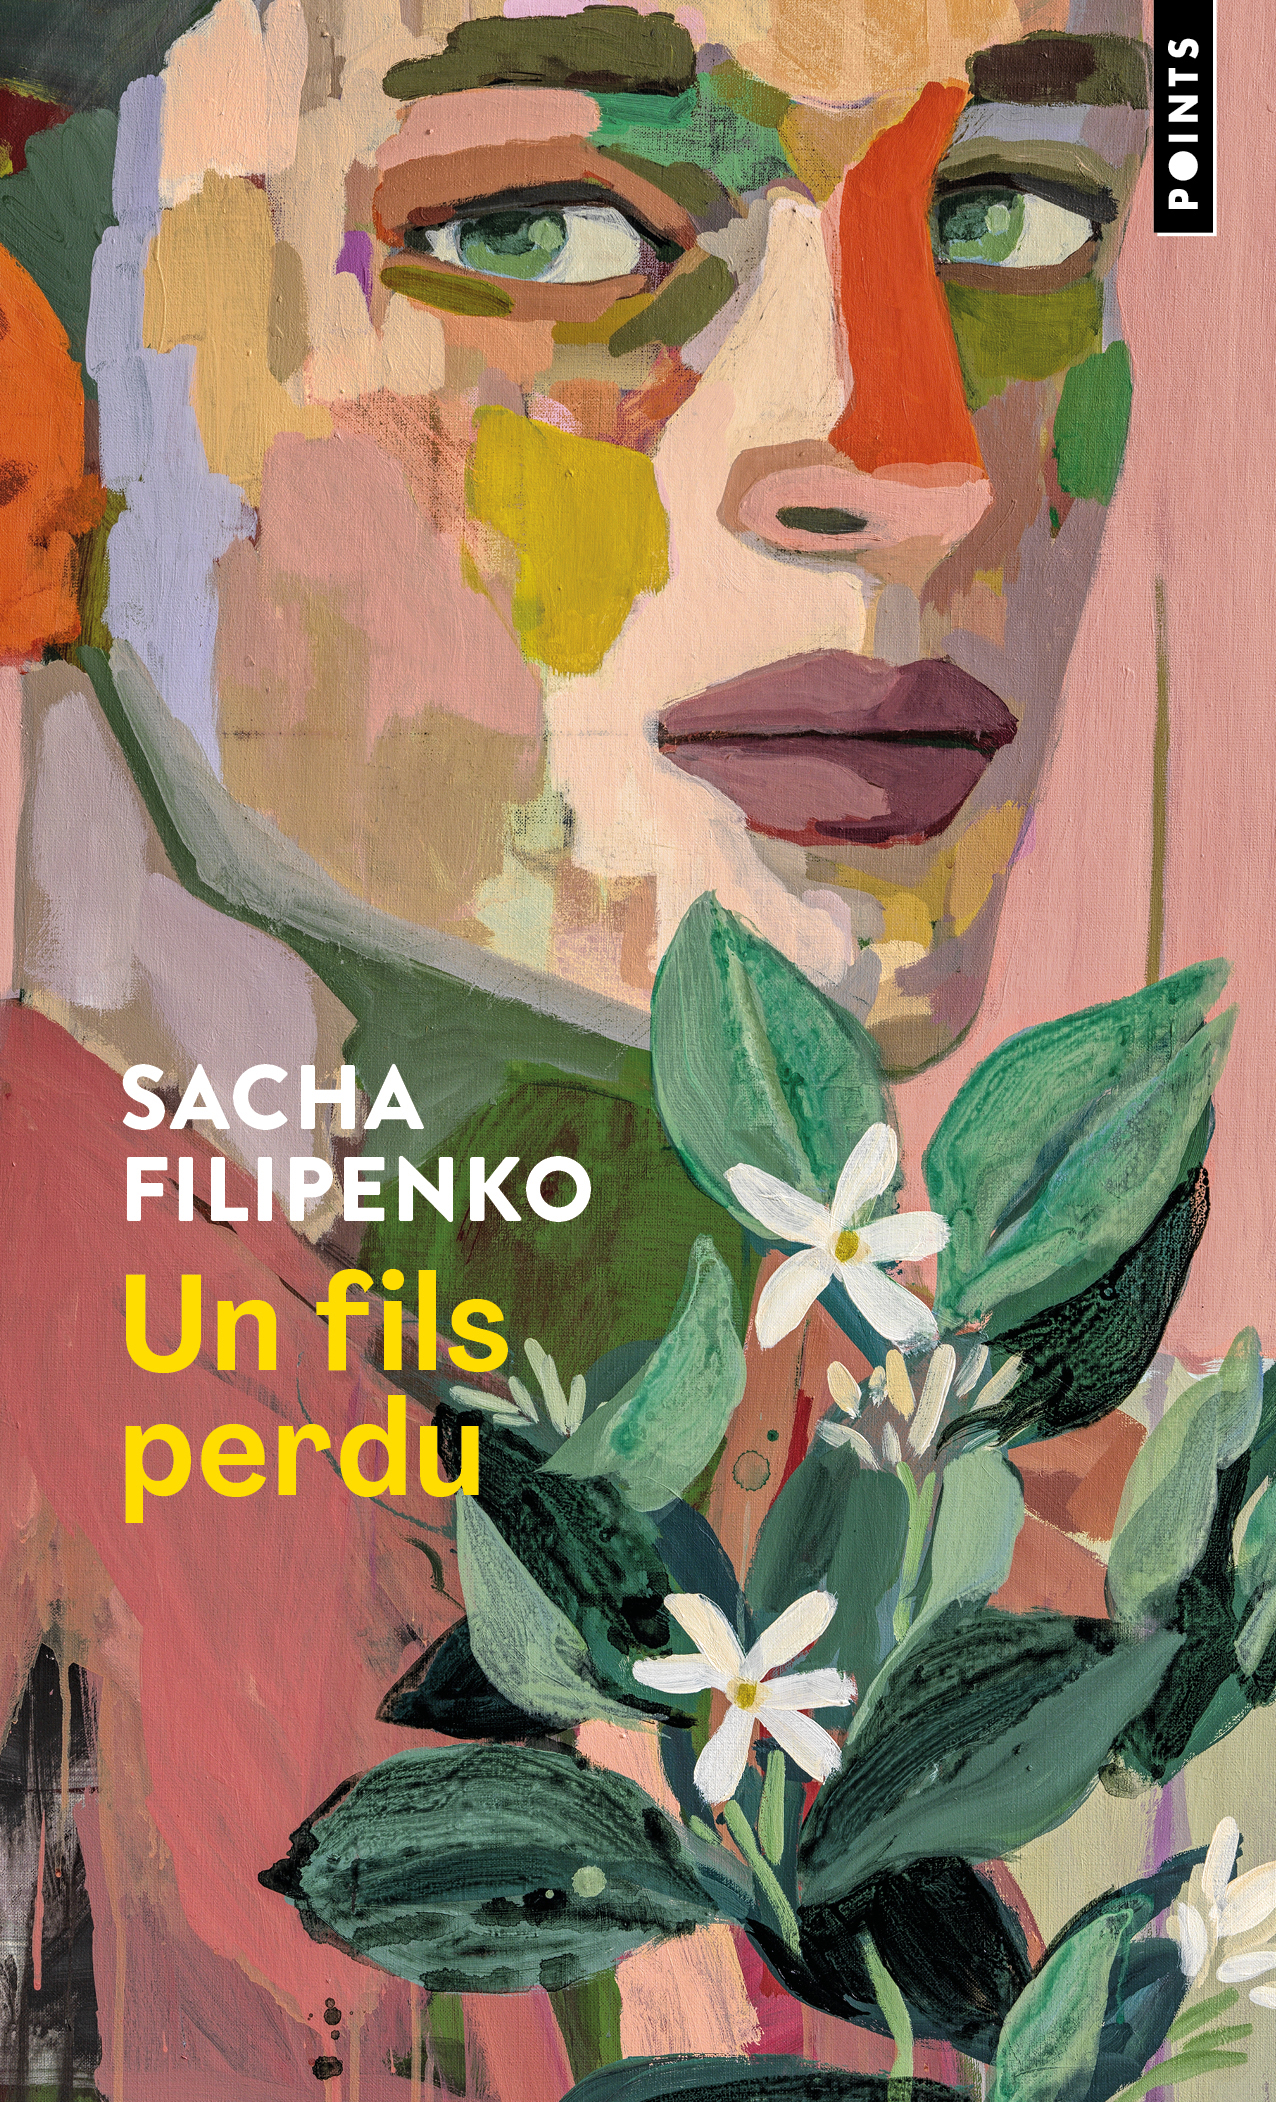 Sasha Filipenko's The Ex-Son in paperback in French